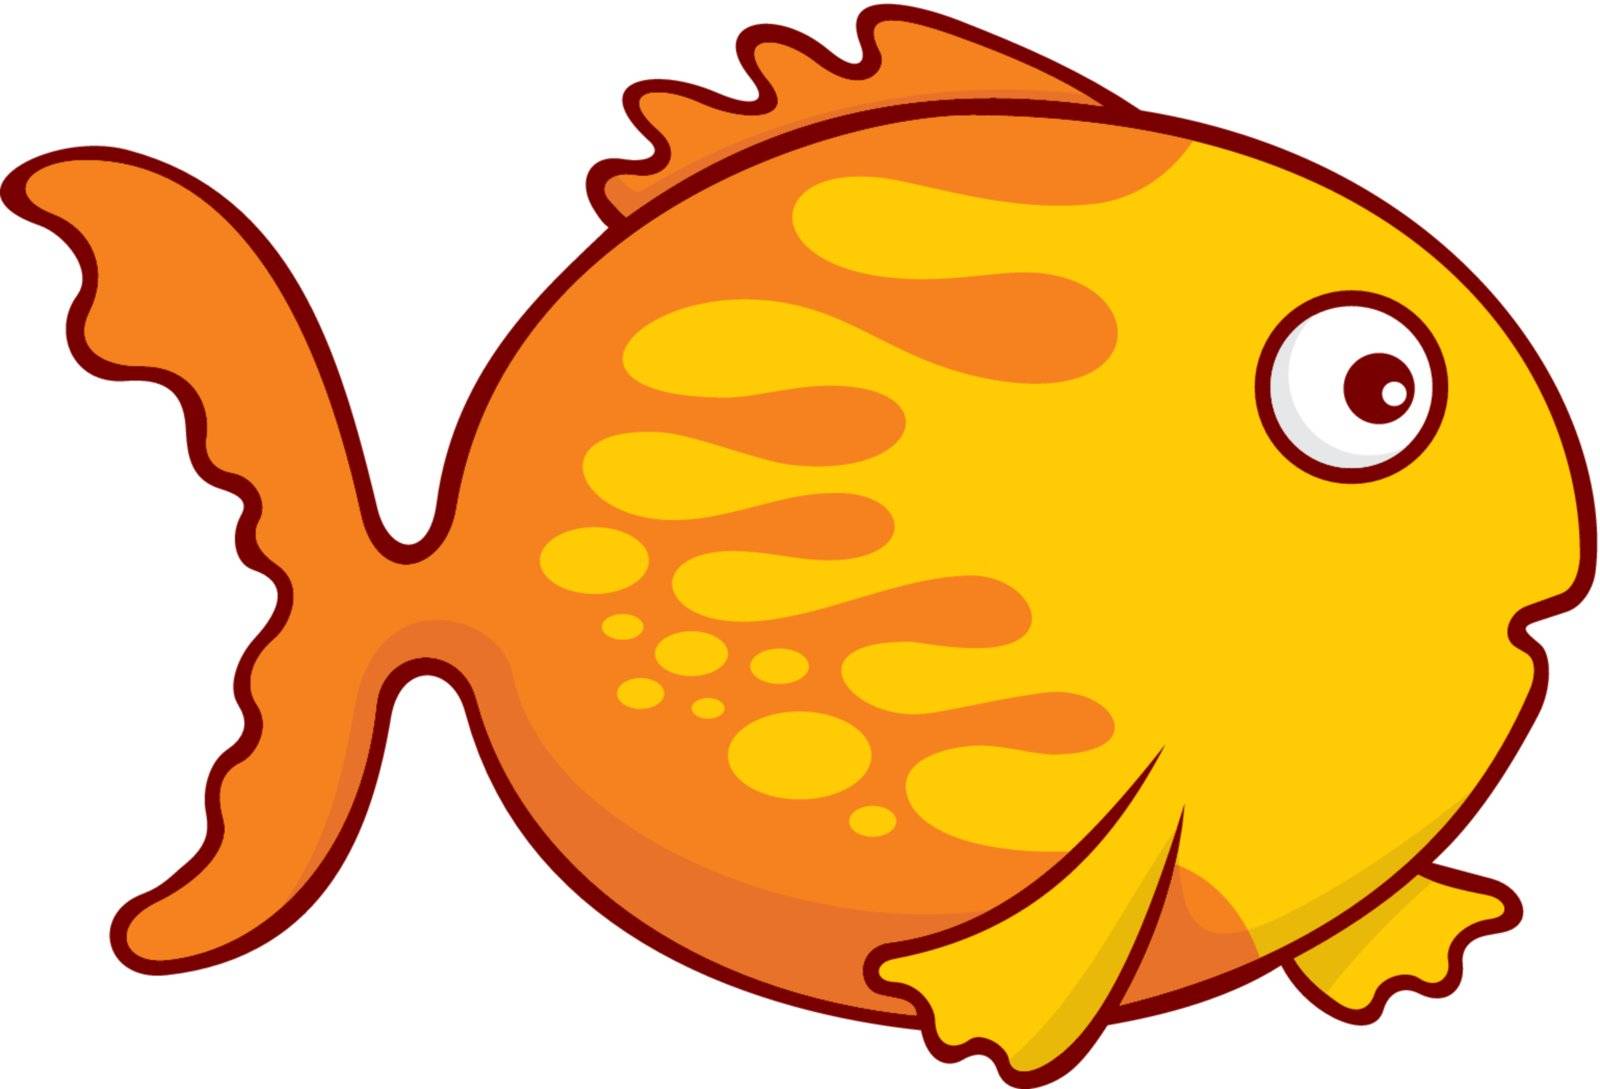 Surprised yellow and orange goldfish cartoon illustration isolated on white background.